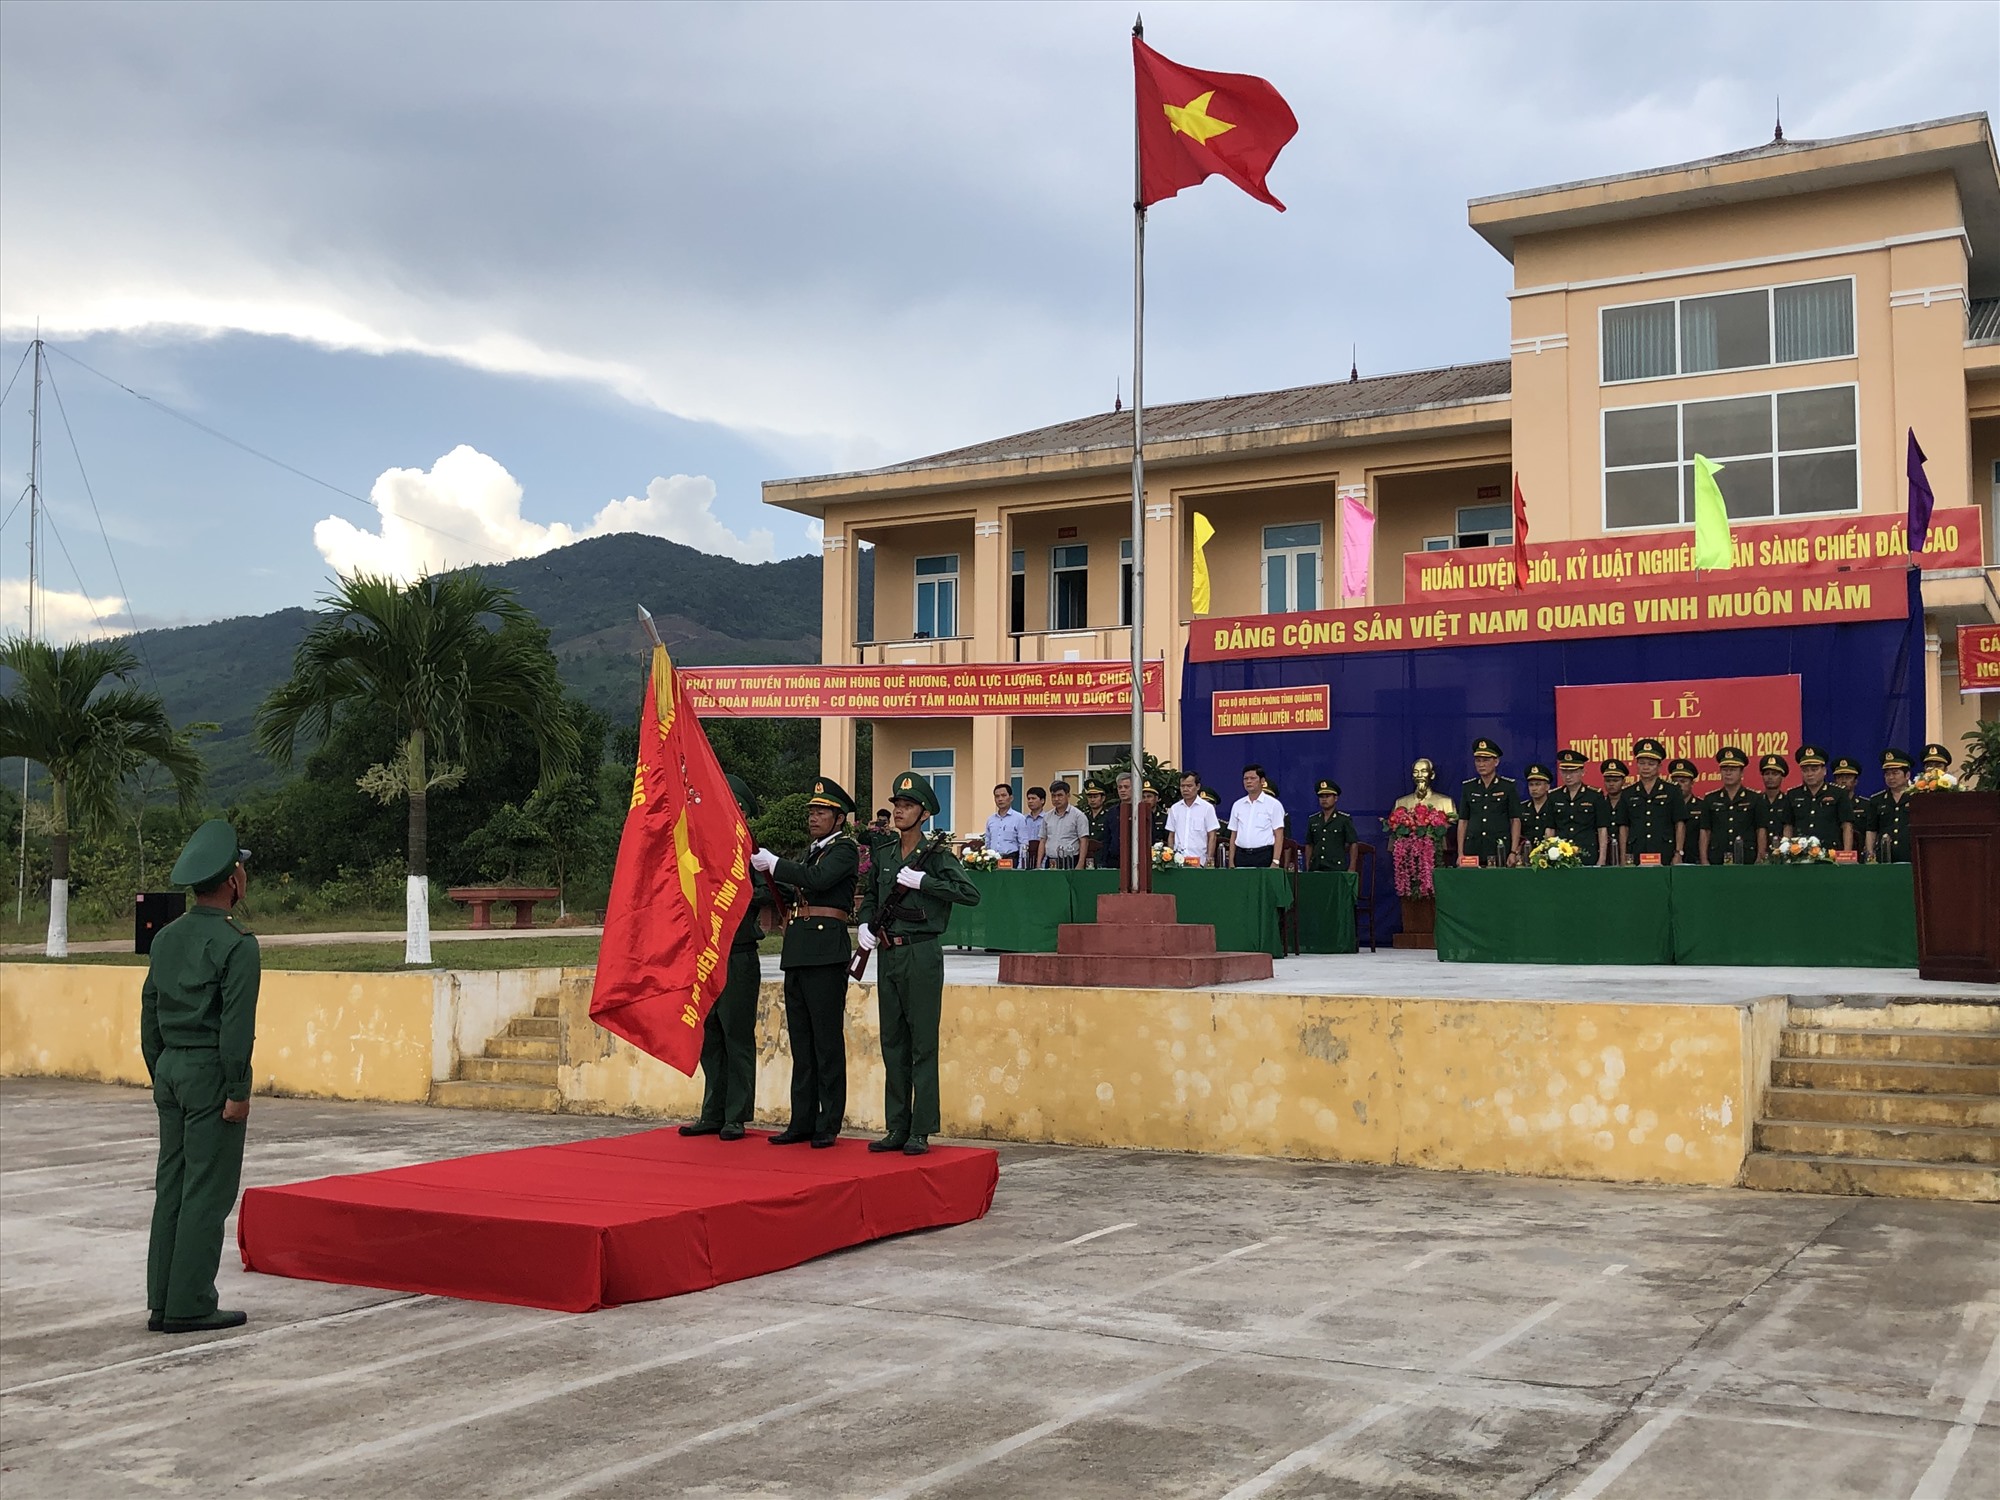 Thượng tá Nguyễn Bá Duyệt - Phó Chỉ huy trưởng phát biểu chỉ đạo tại buổi lễ tuyên thệ chiến sĩ mới